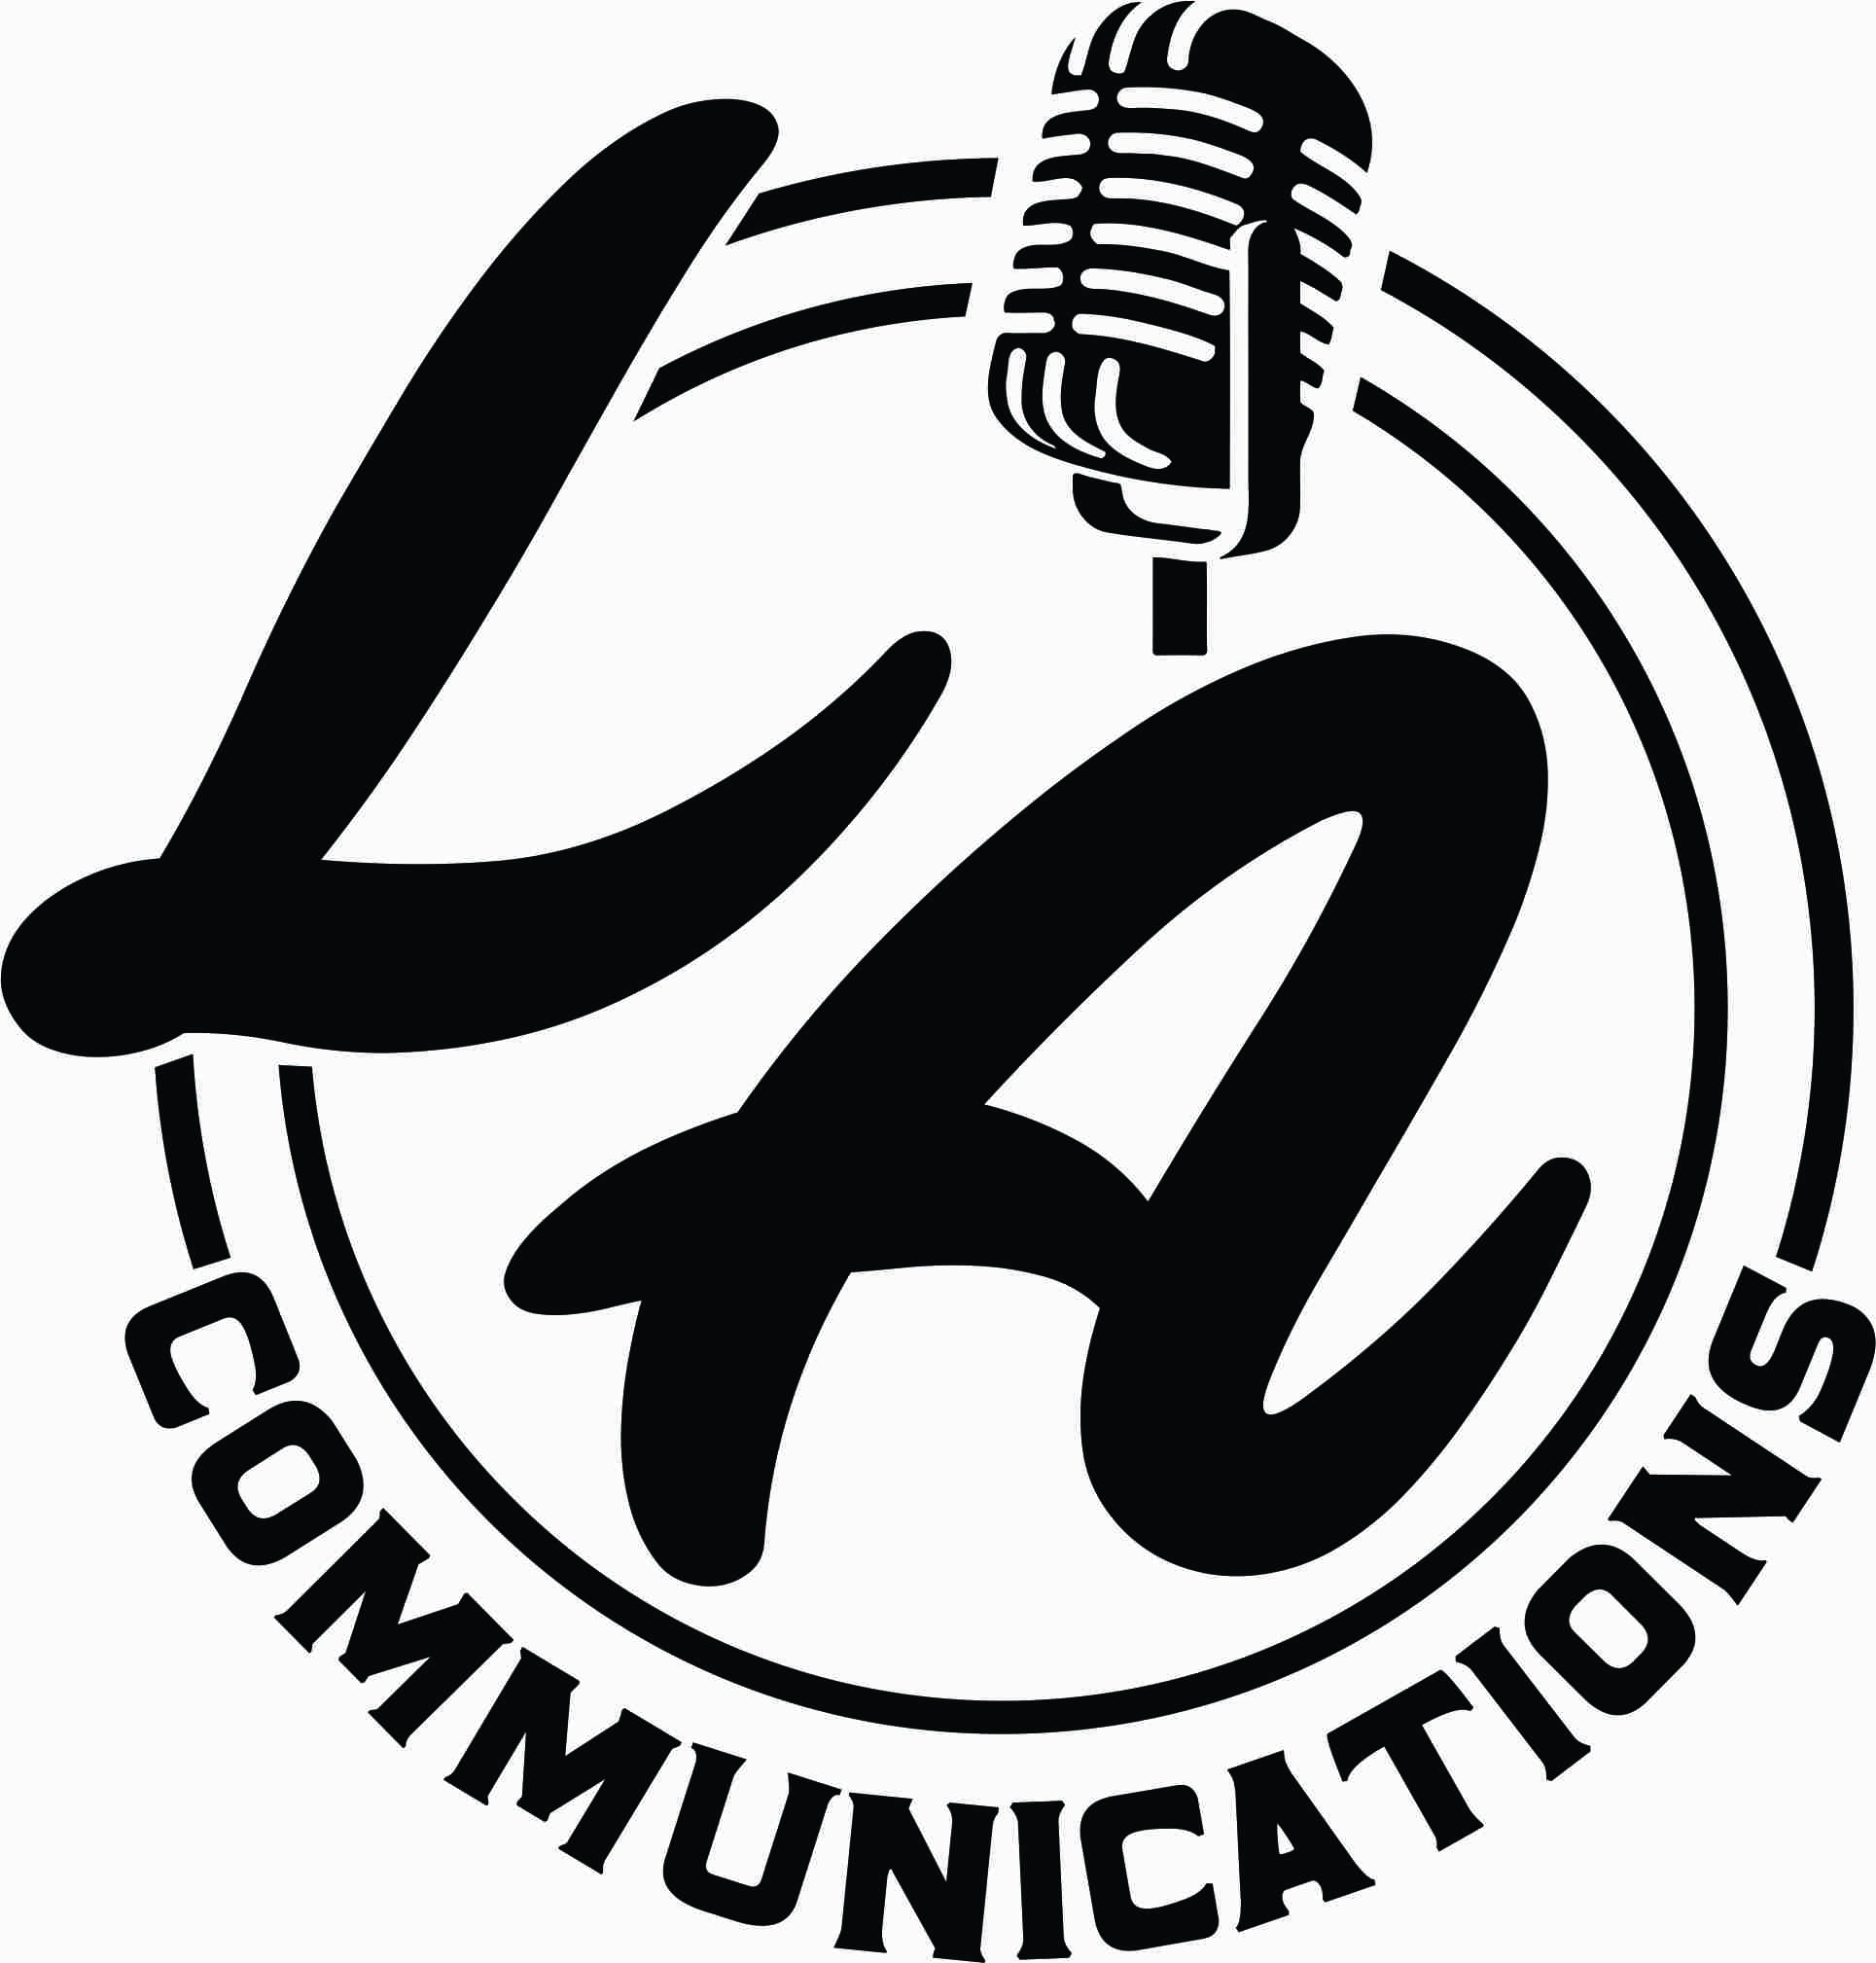 LA Communications